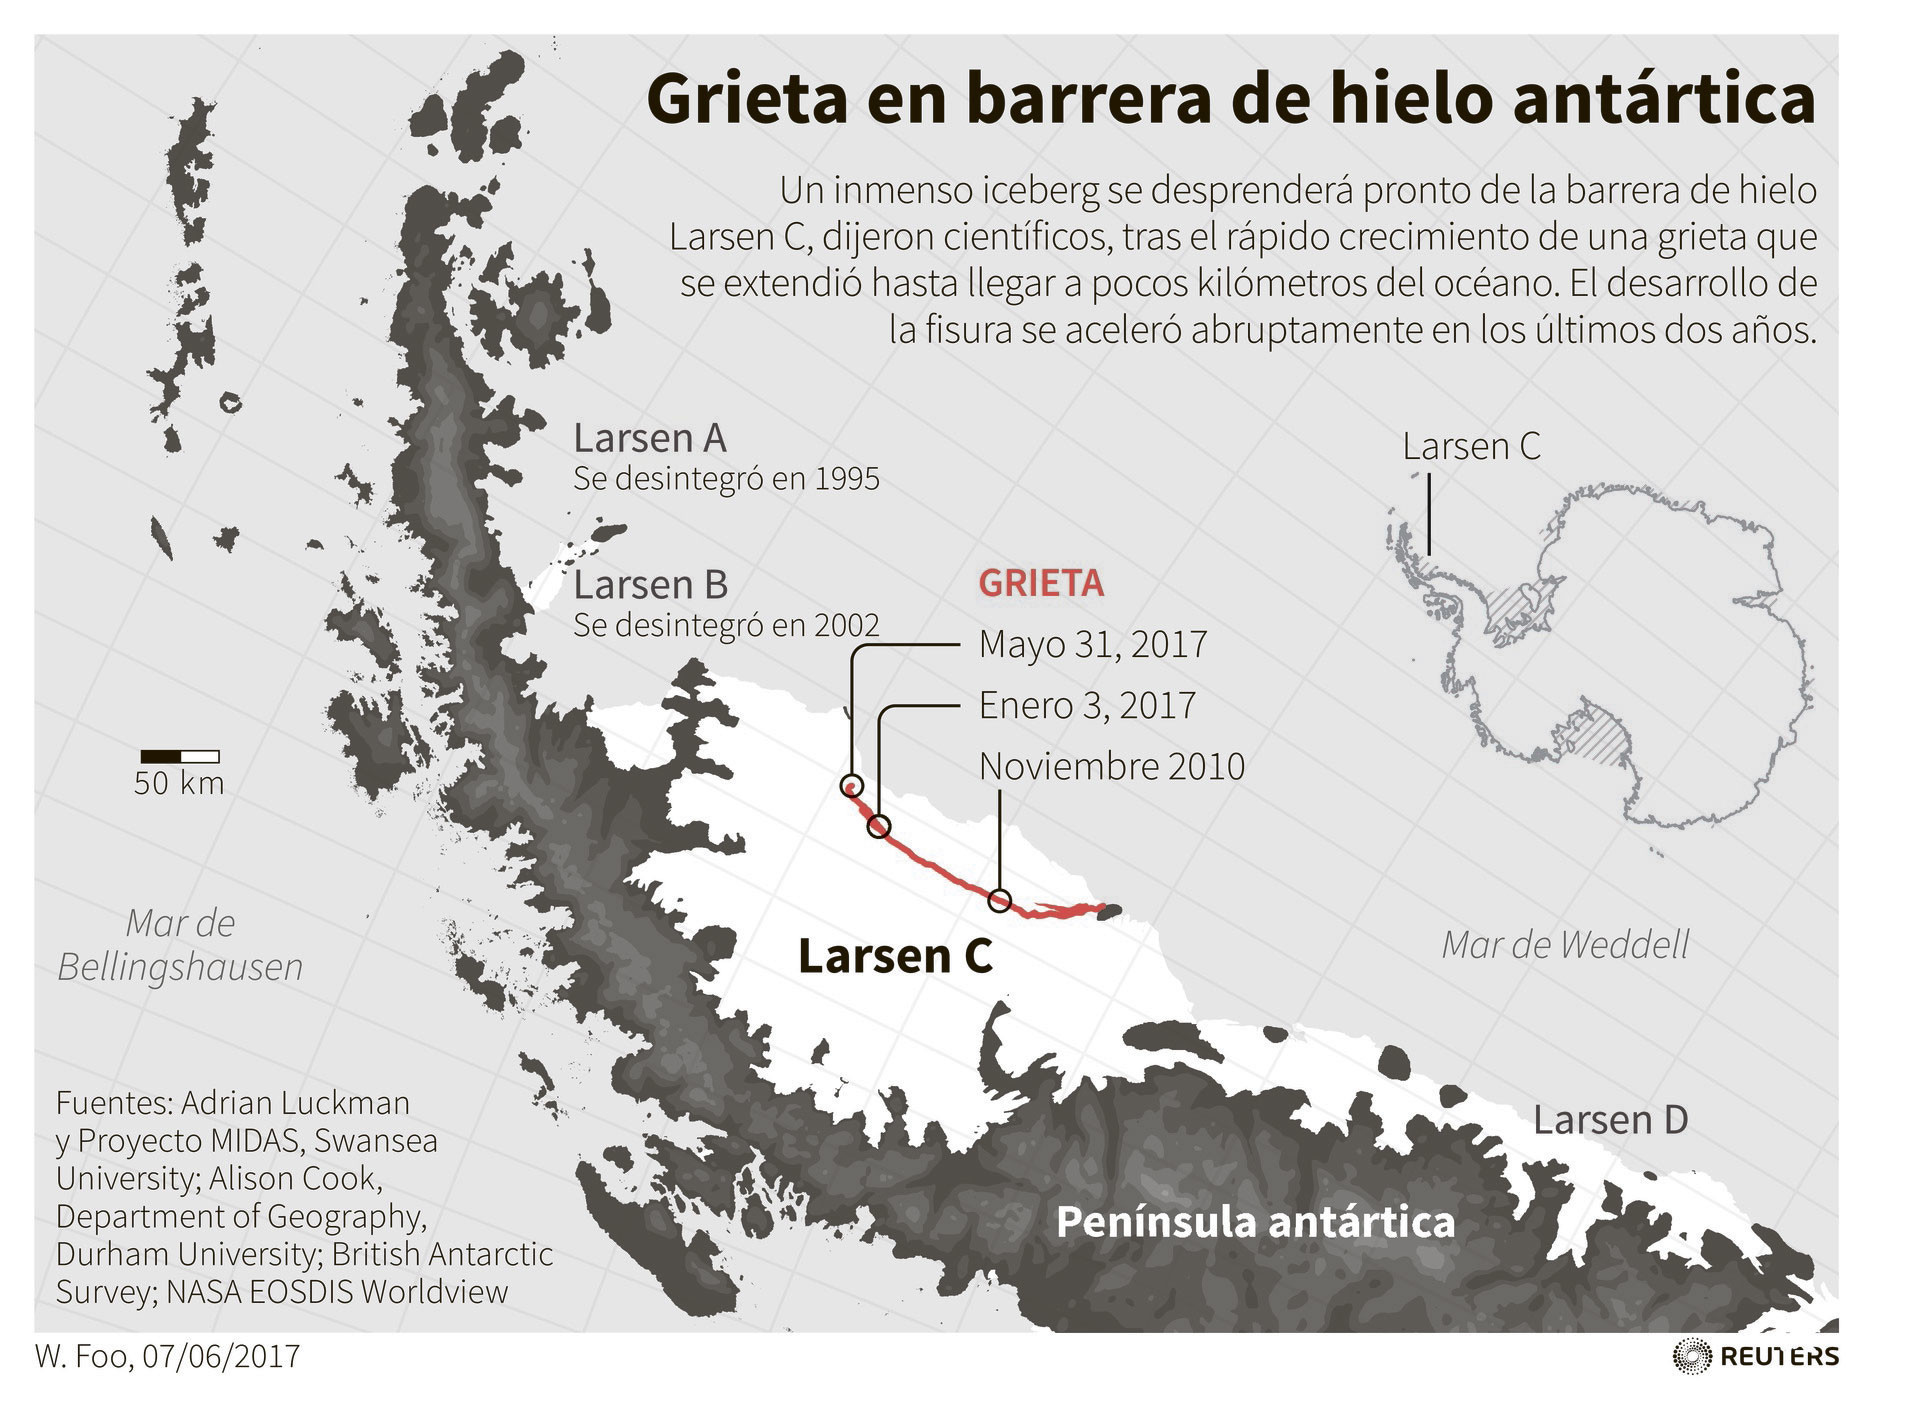 "Evento planetario": ¿Hacia dónde se dirige el iceberg gigante que 'partió' la Antártida? Seguimiento Larsen C 596637aee9180fef158b456a